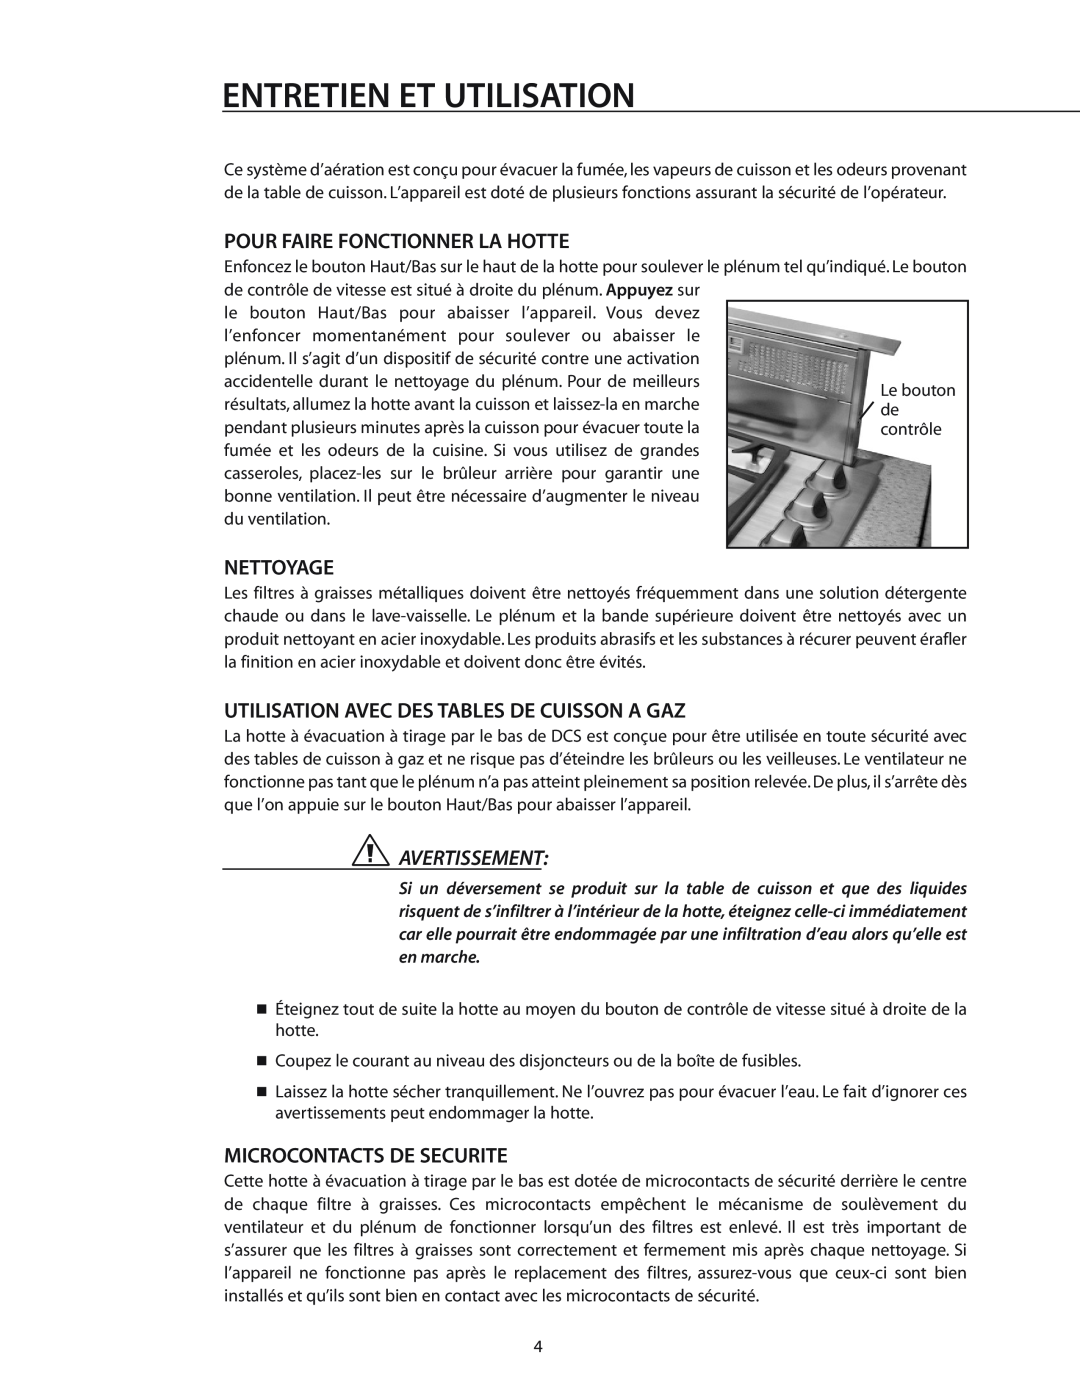 DCS DD-30SS Entretien Et Utilisation, Pour Faire Fonctionner La Hotte, Nettoyage, Microcontacts De Securite, Avertissement 